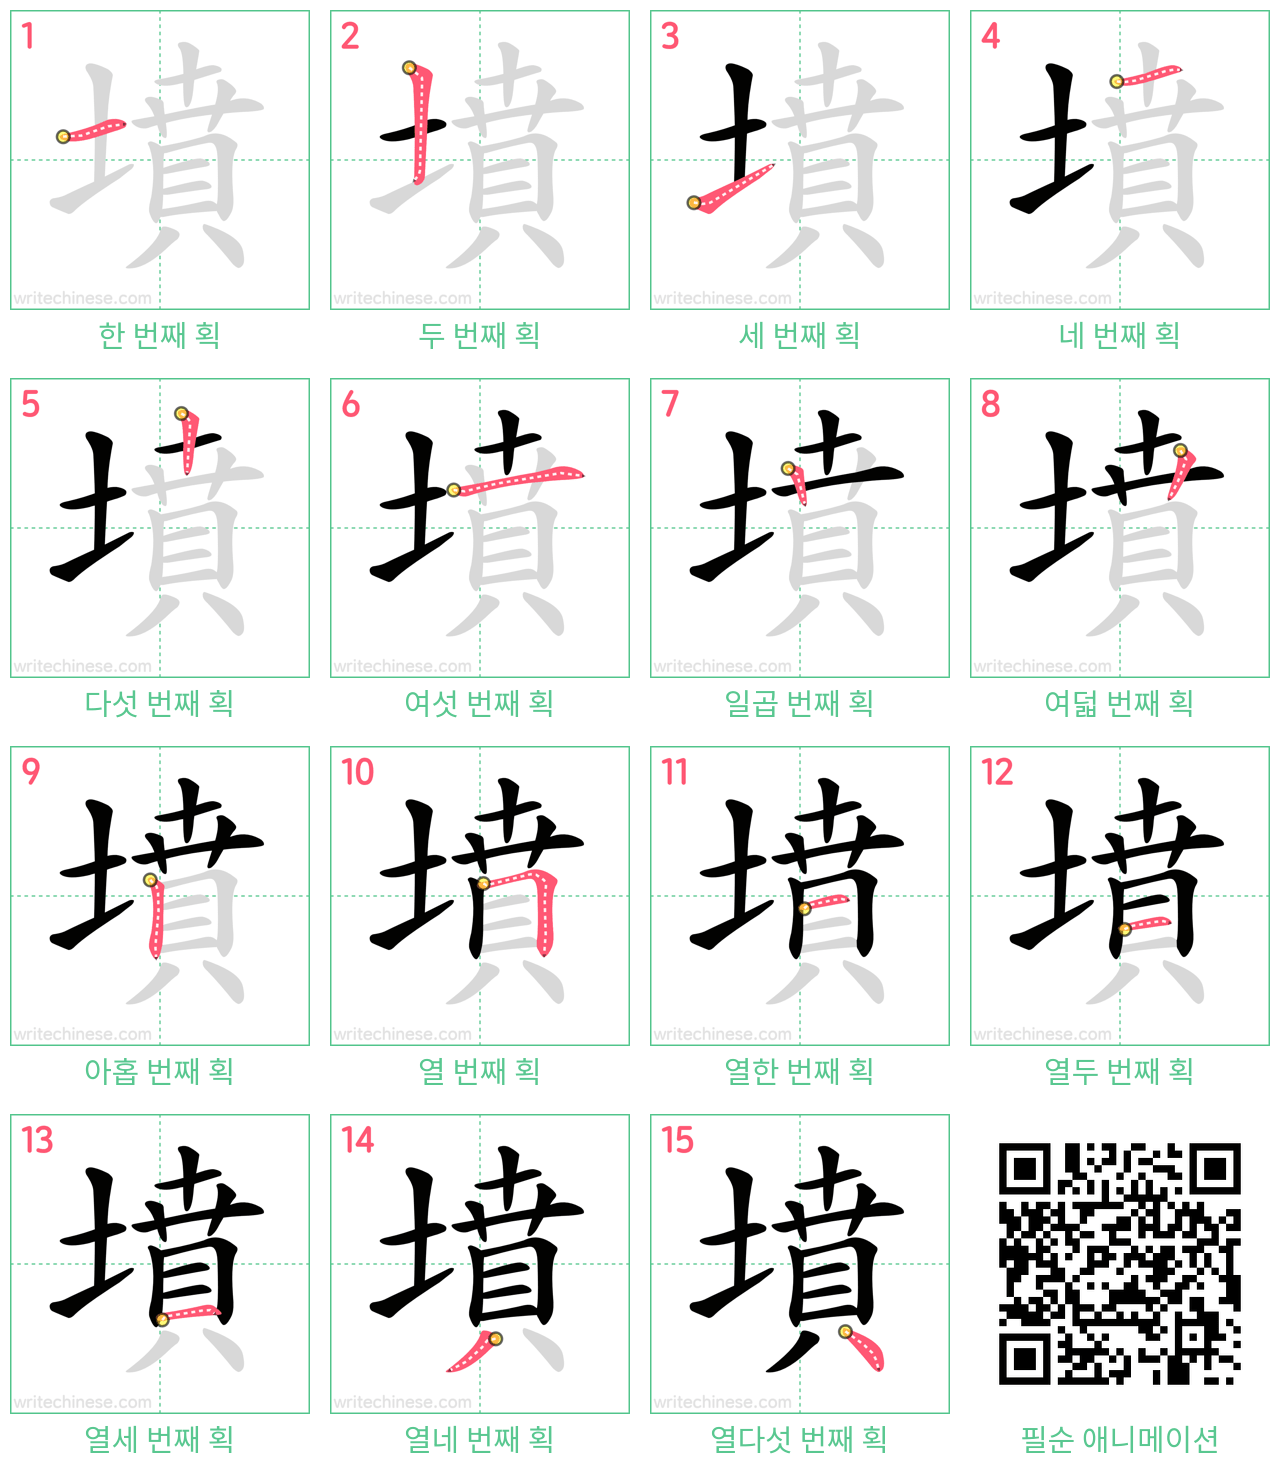 墳 step-by-step stroke order diagrams